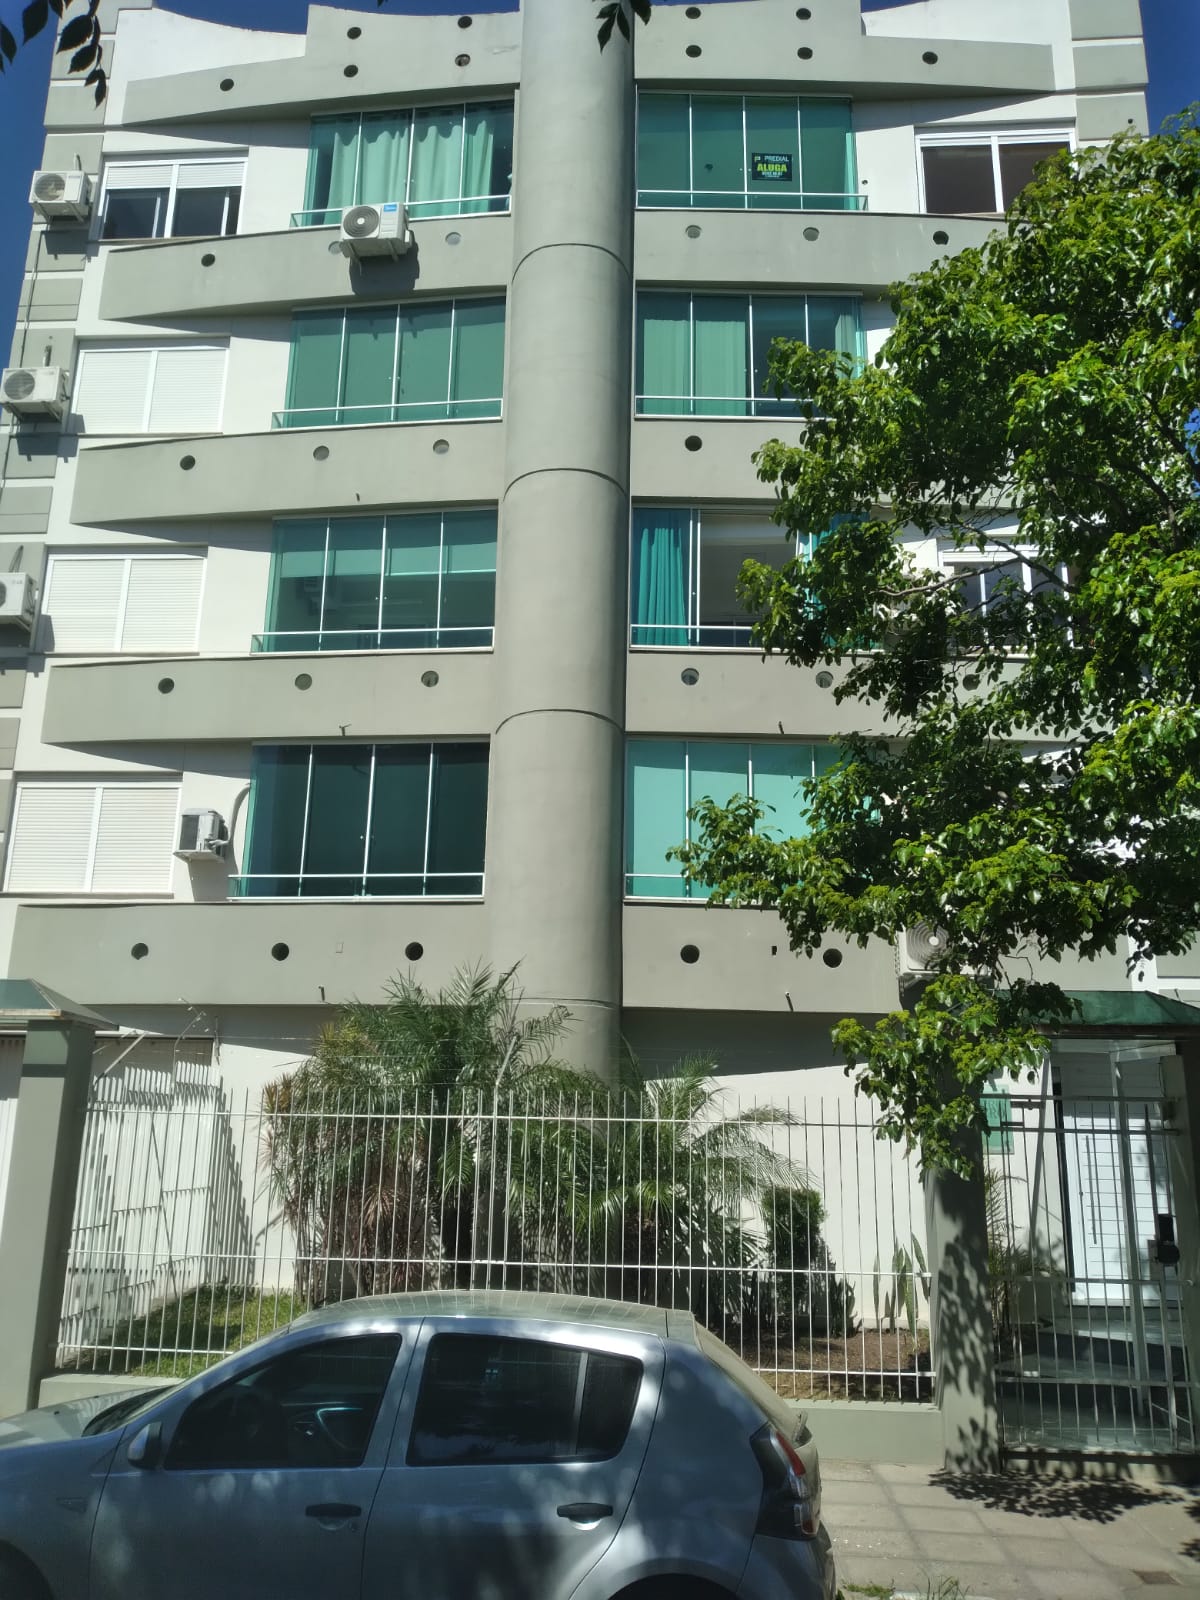 Greice Porto Negócios Imobiliários - Bagé- Excelete apartamento no Residencial Varadero com 02 dormitórios sendo 01 suíte.